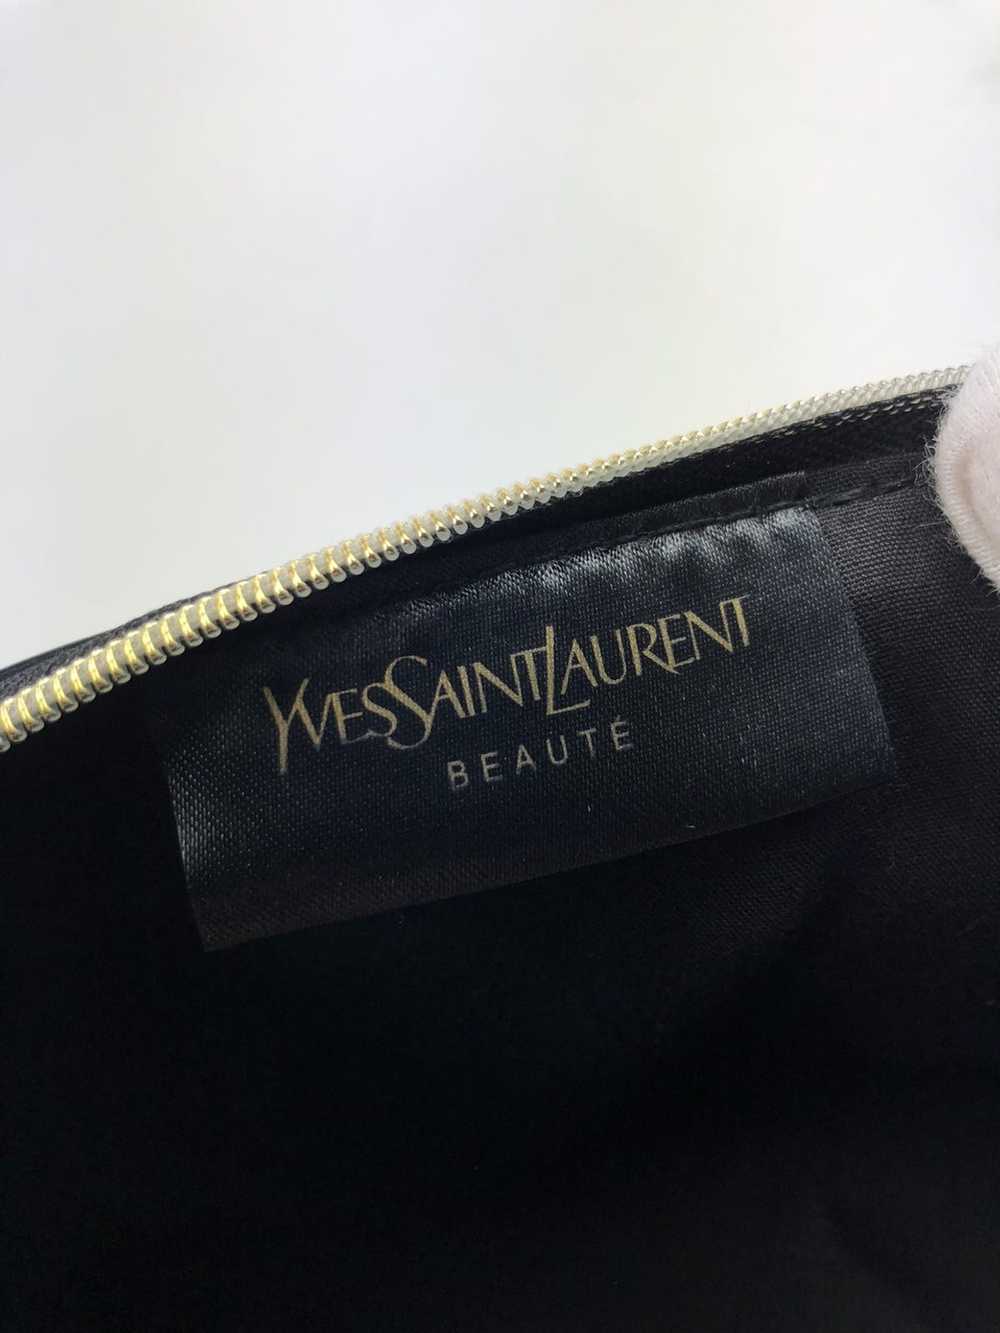 Yves Saint Laurent Yves saint Laurent beauty leat… - image 6